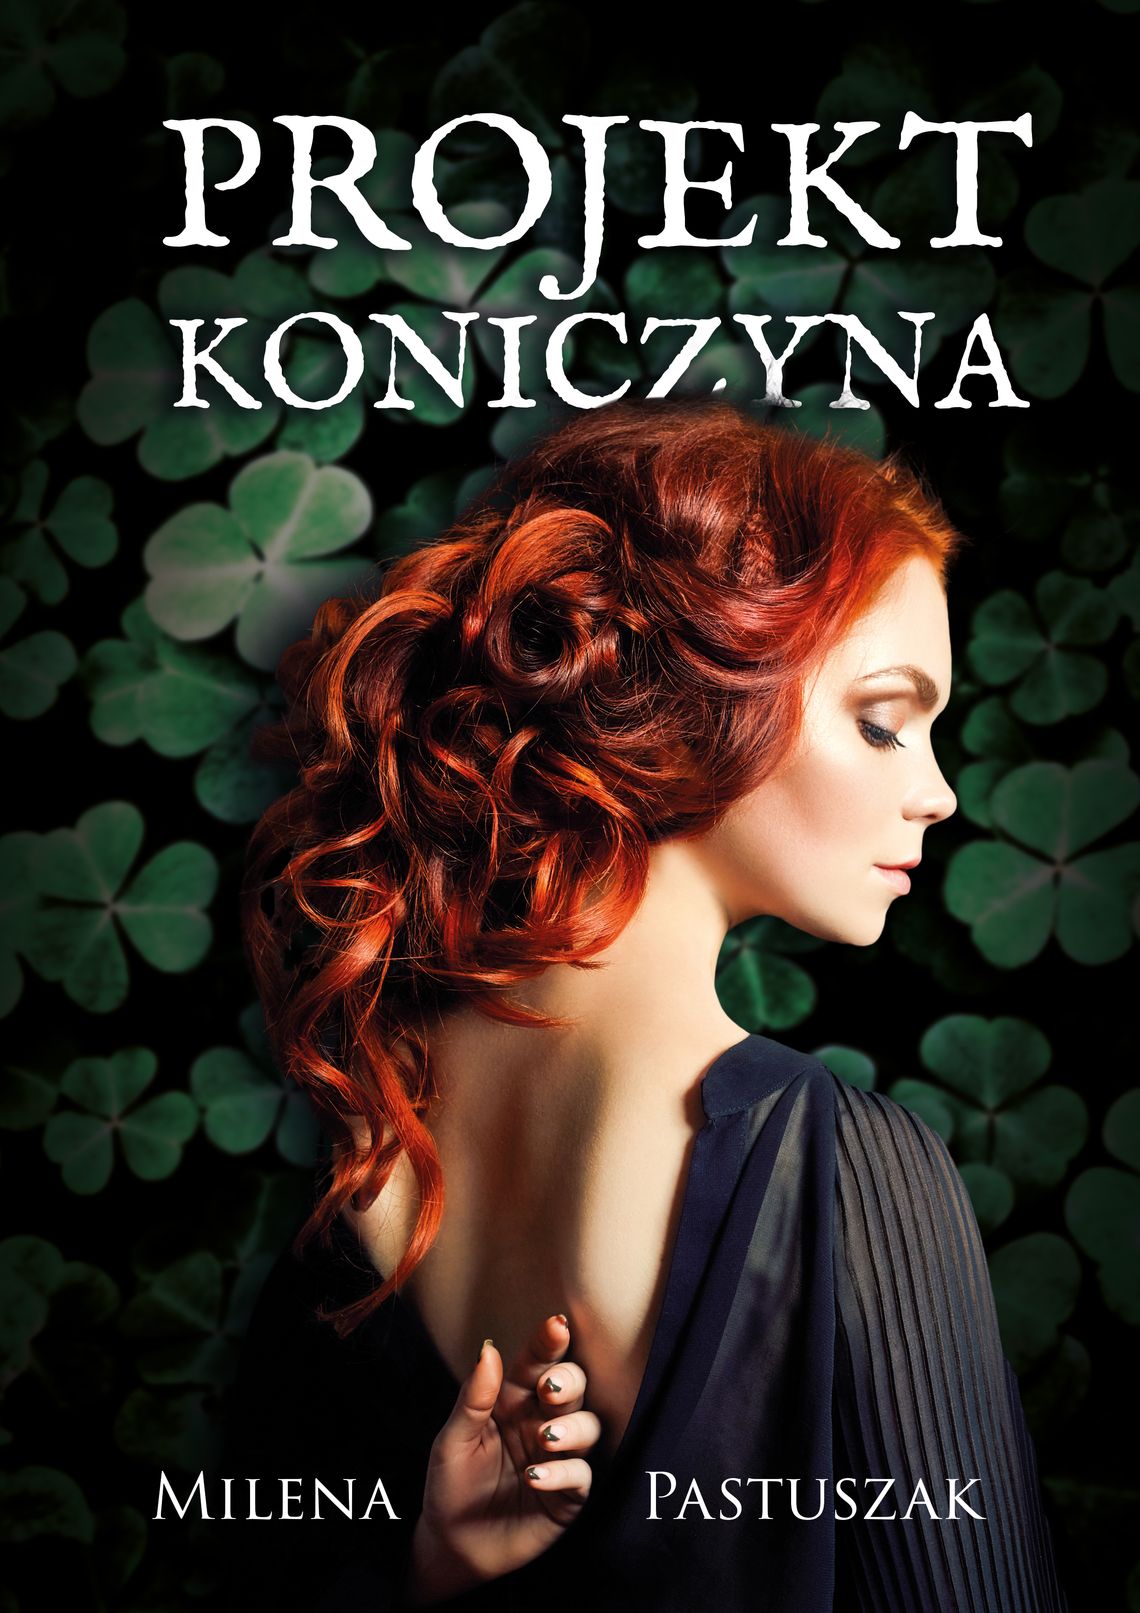 Jesienią zostanie wydana druga część powieści "Projekt Koniczyna" autorstwa młodej włocławianki